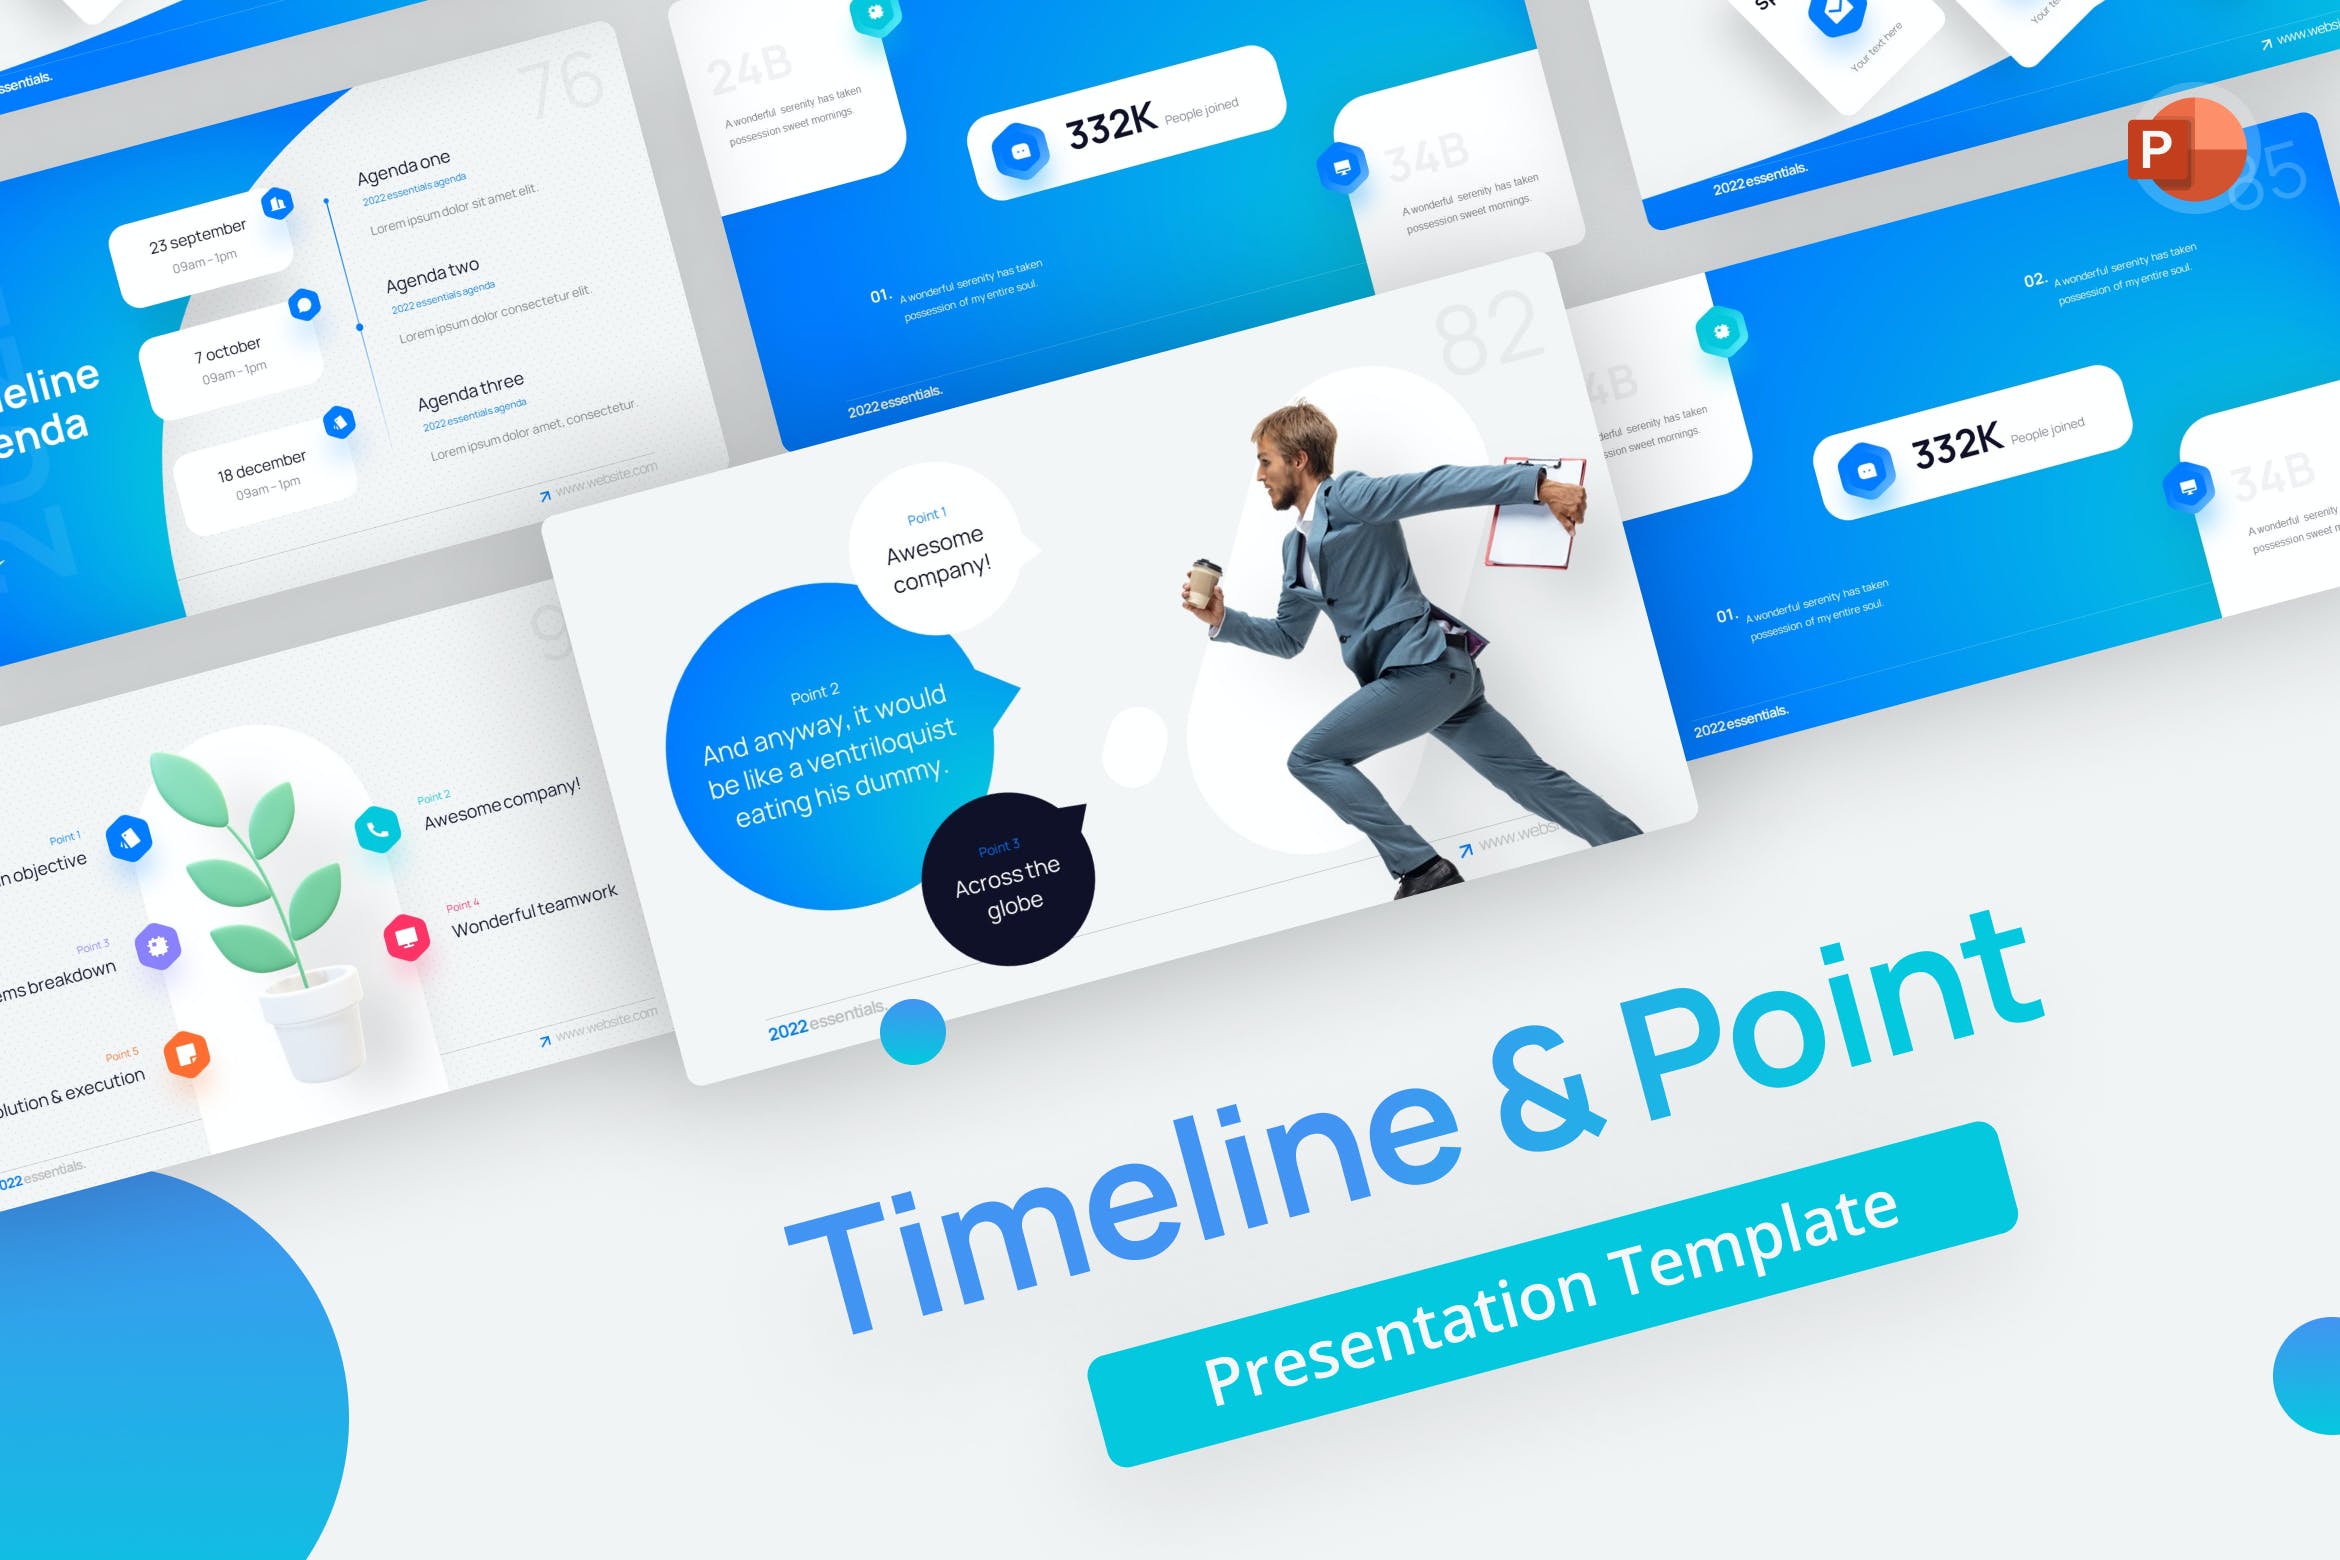 时间线PPT设计模板 Timeline & Point PowerPoint Template 幻灯图表 第1张